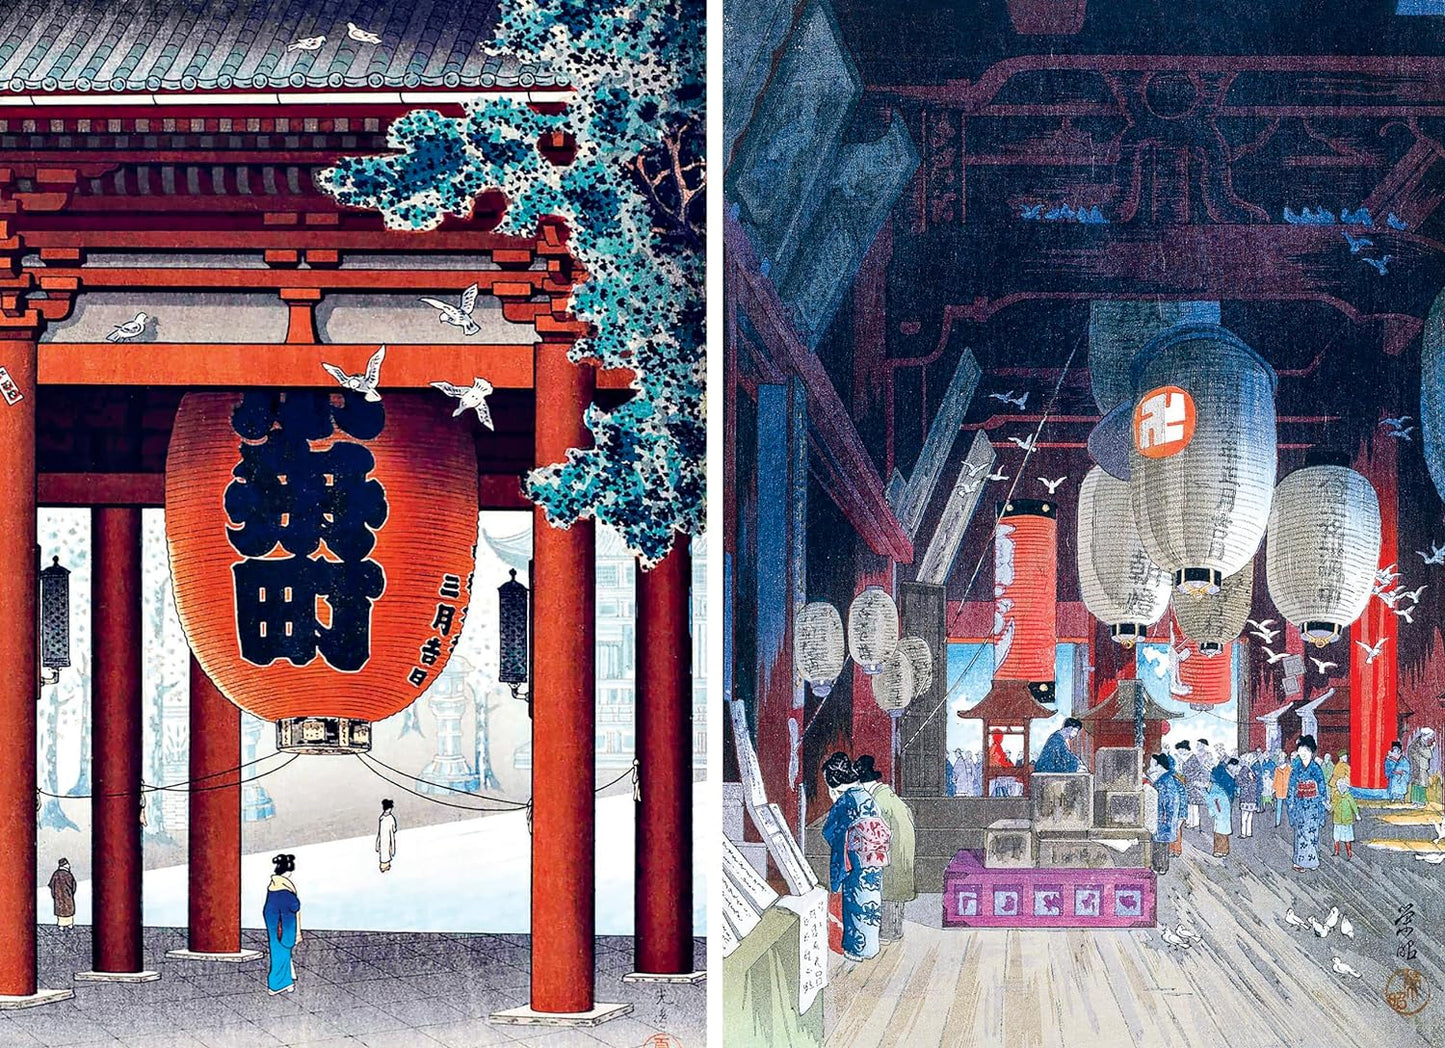 Templi e santuari. Visti dai maestri della stampa giapponese